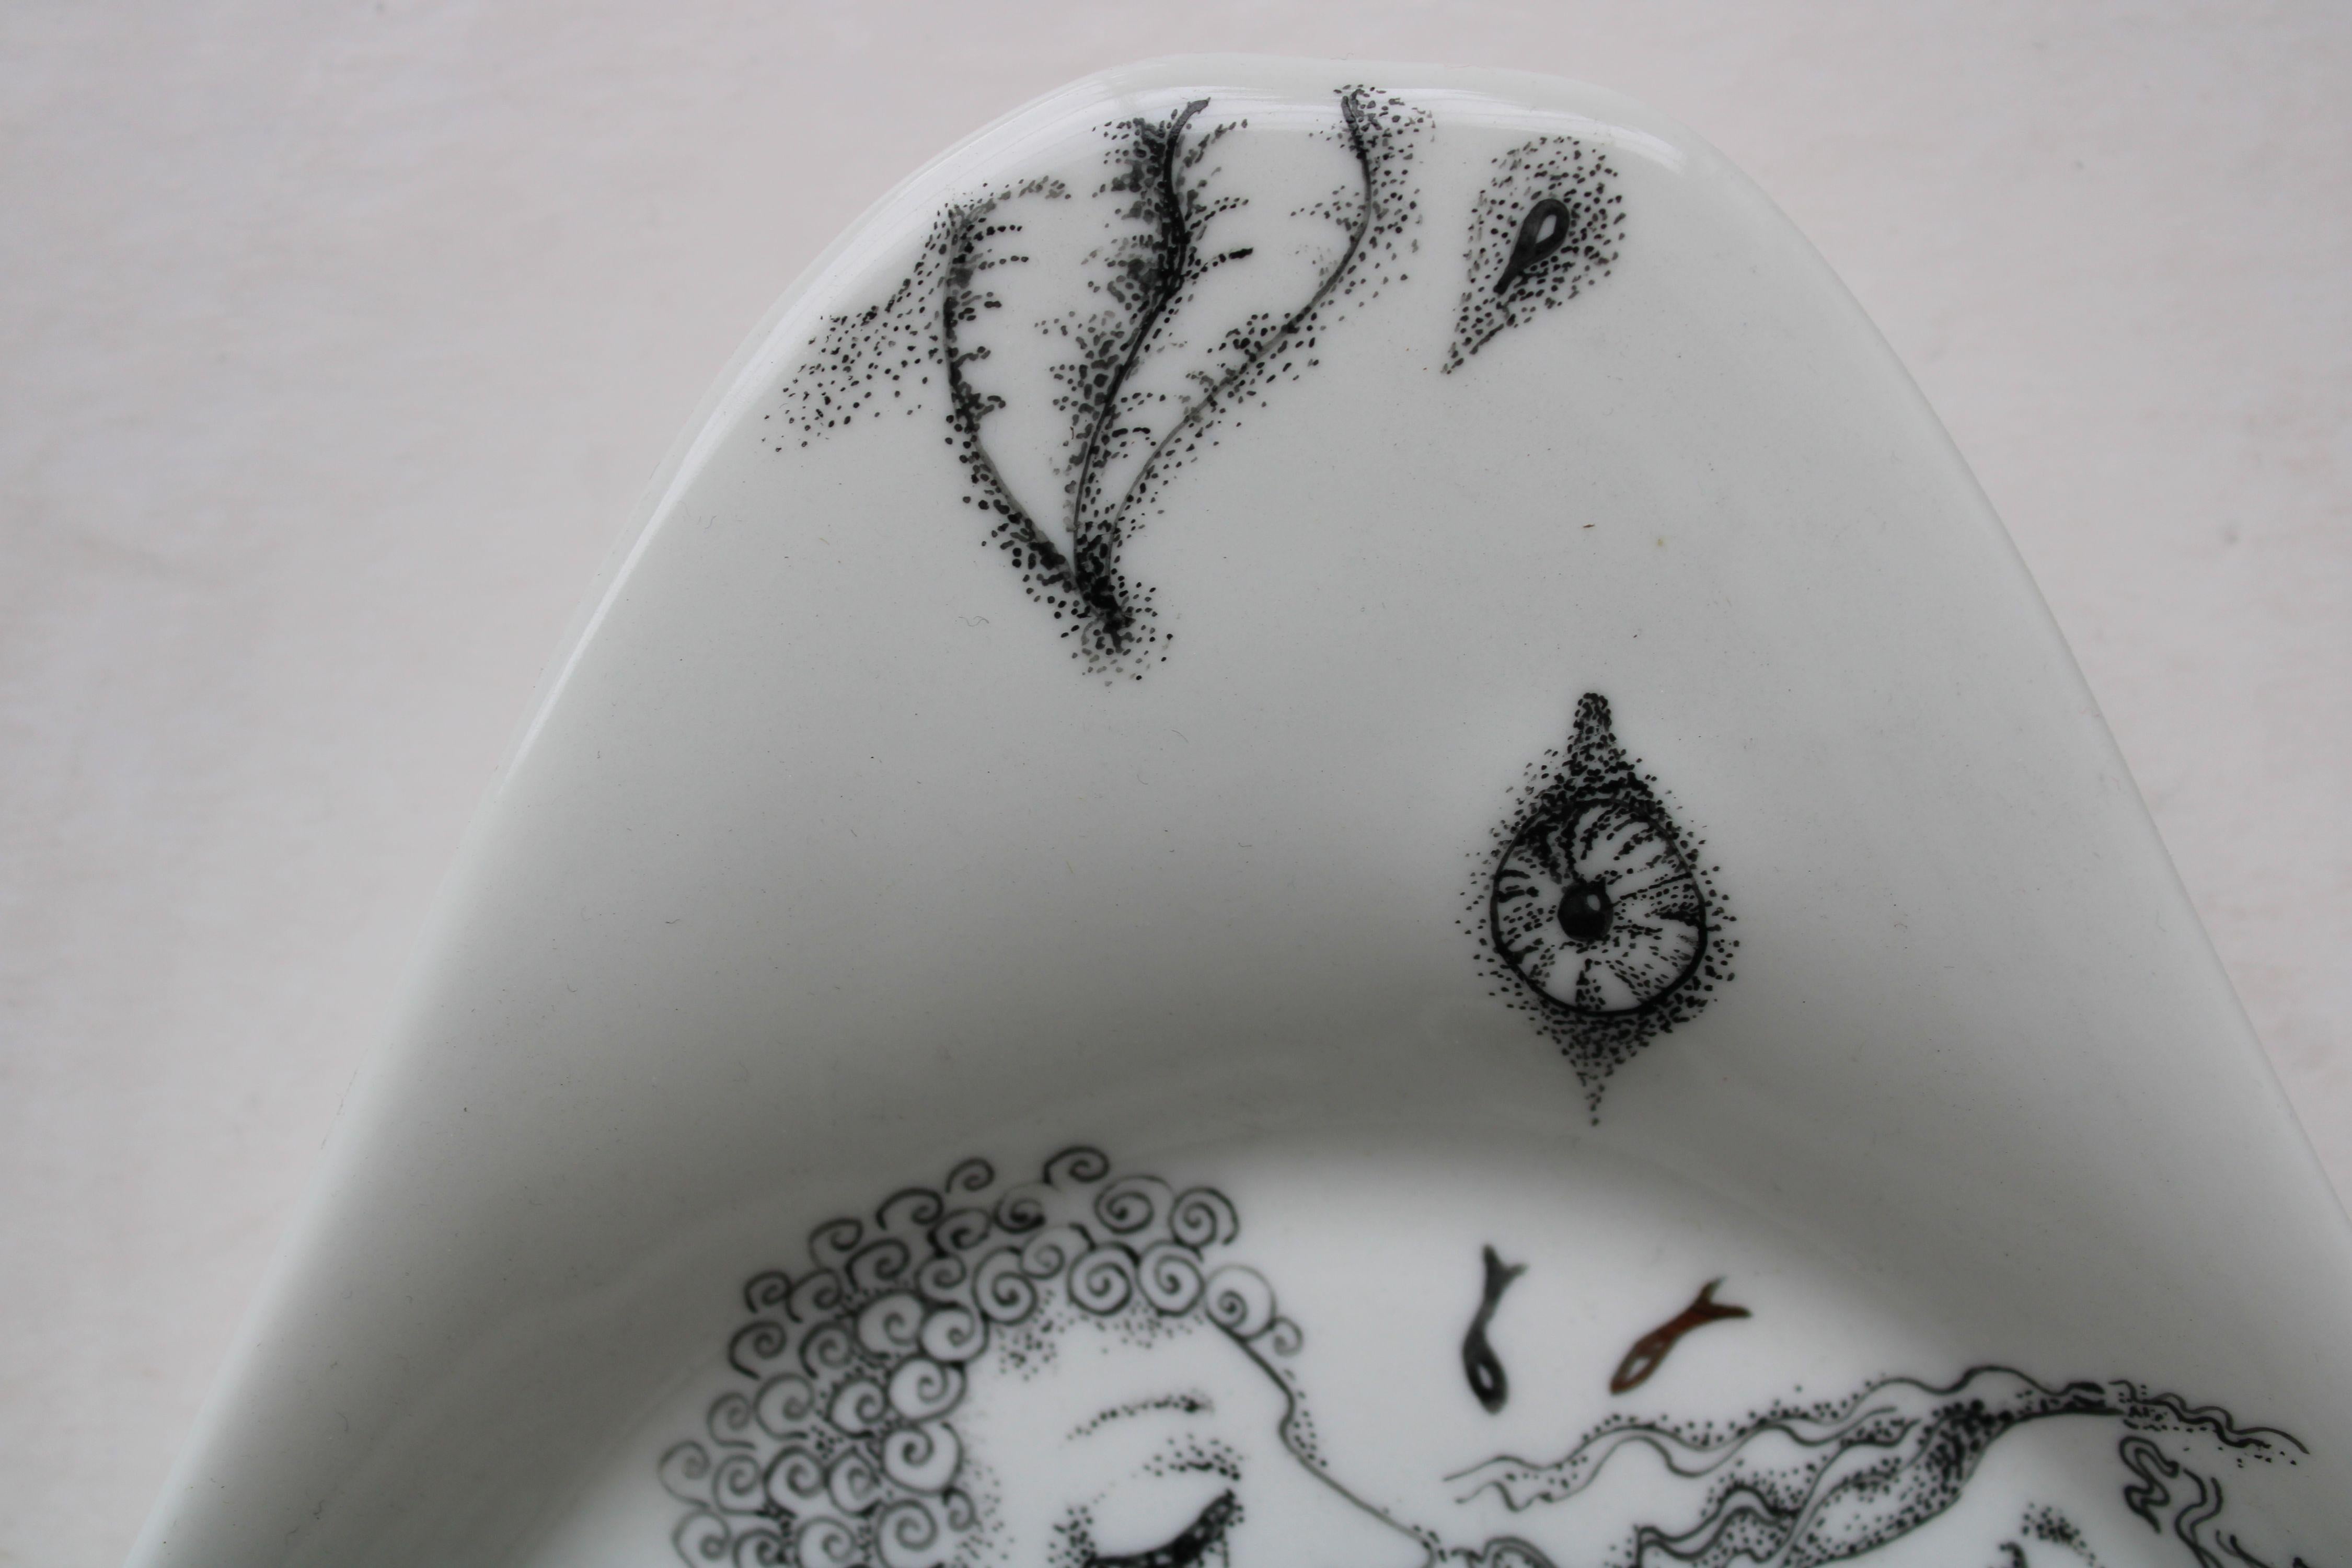  Water  2009, painted porcelain plate, 39х19х2.5 cm For Sale 2